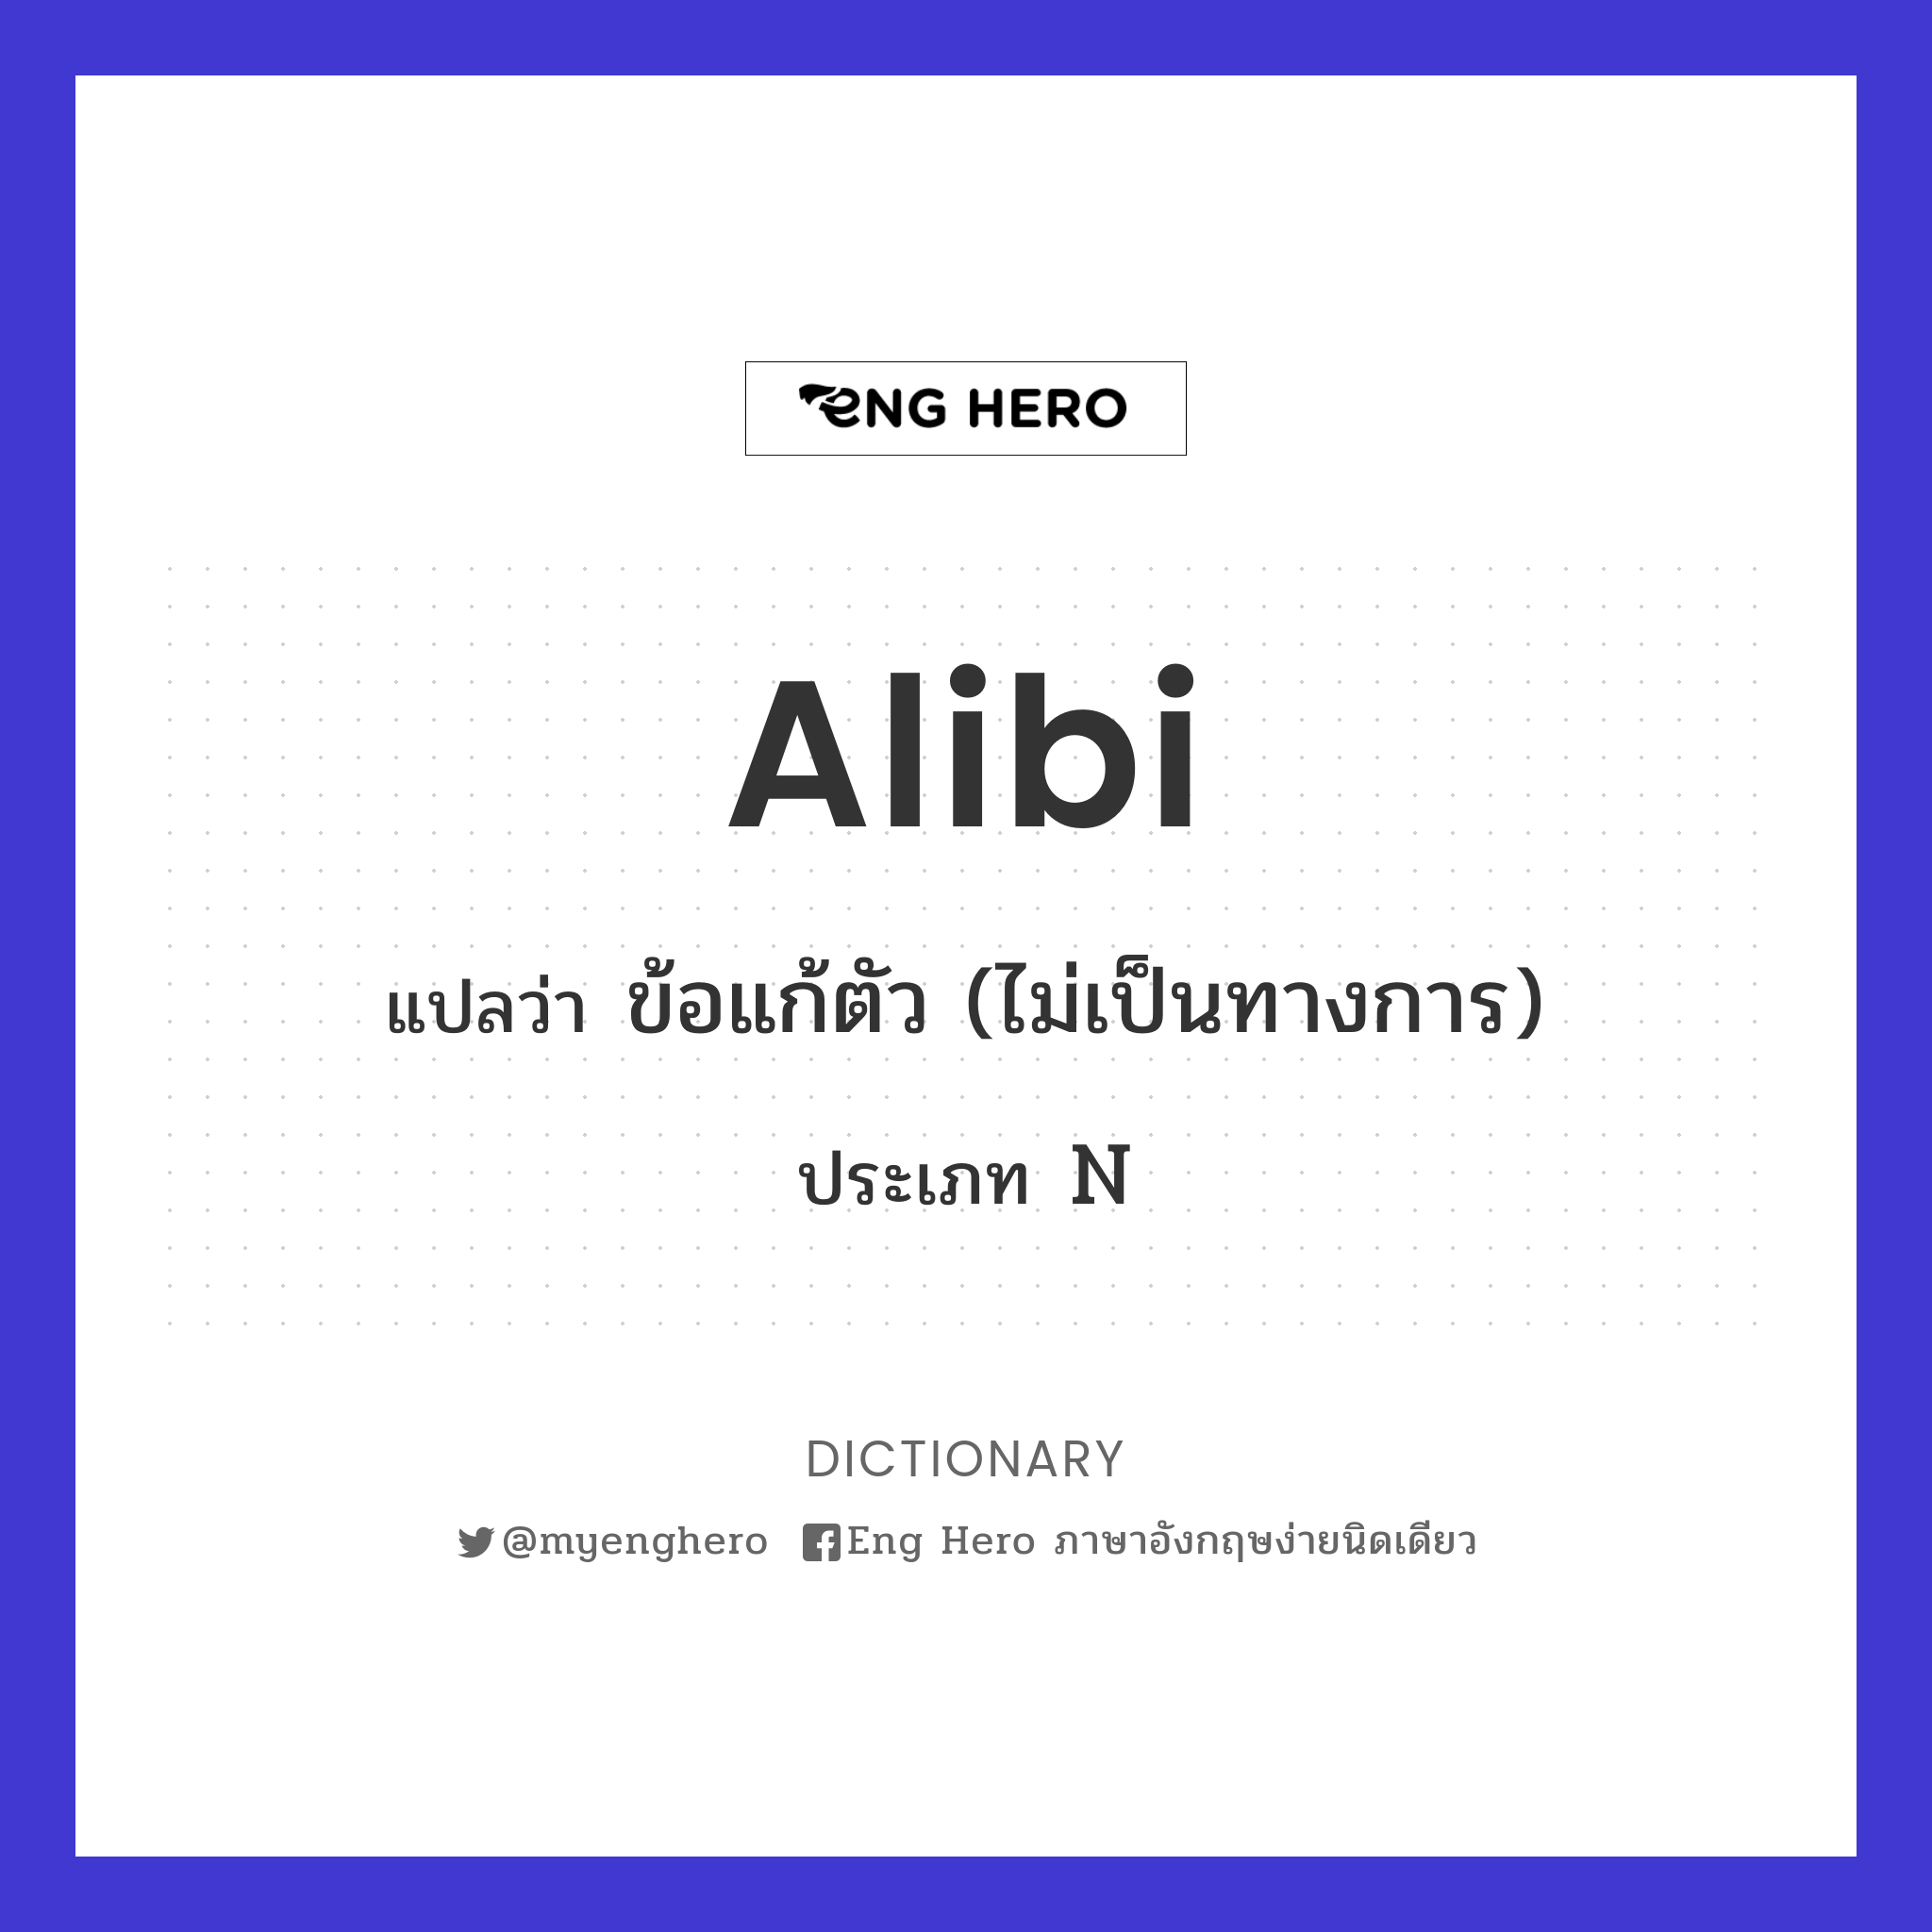 alibi